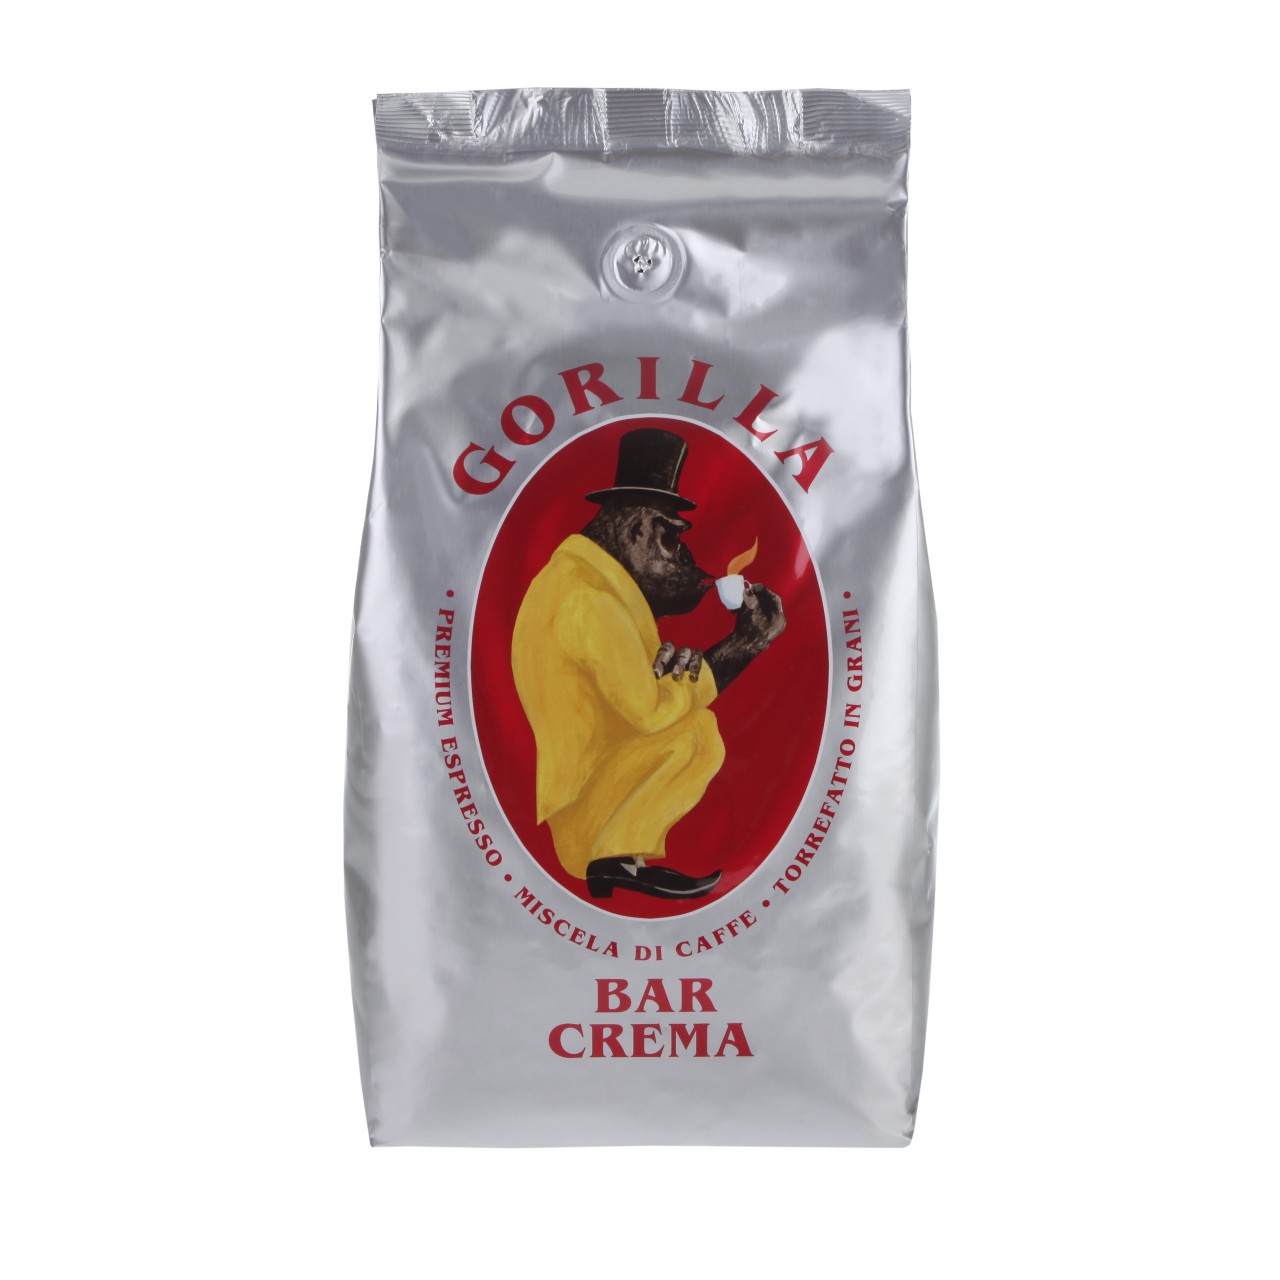 Gorilla Bar Crema